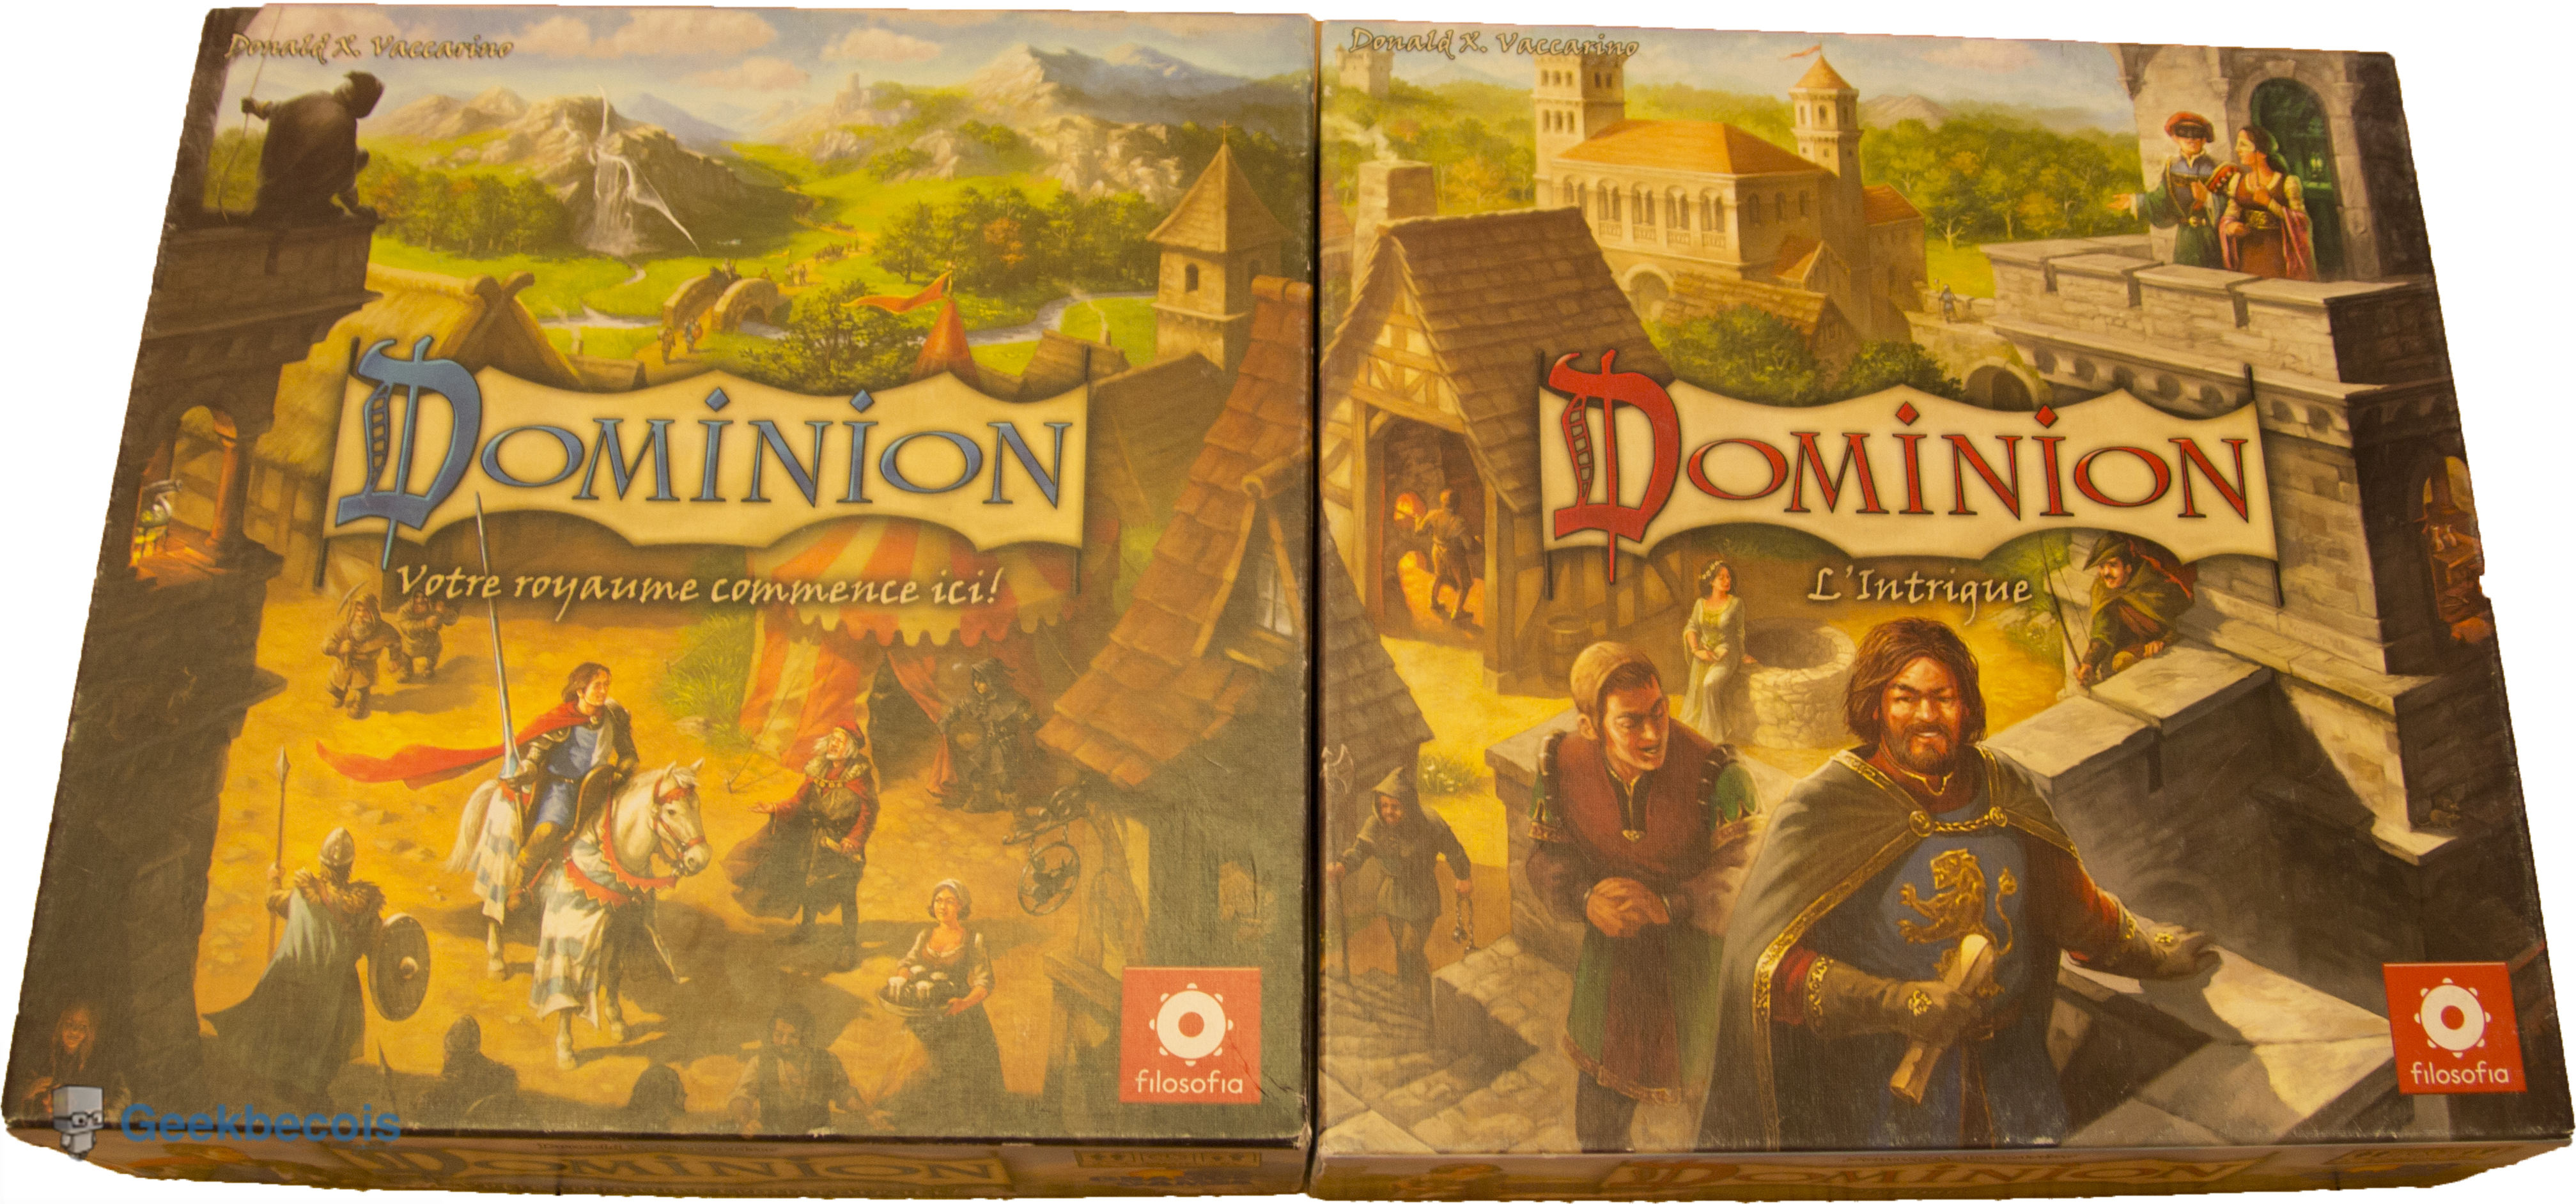 Dominion - boitiers des jeux de base